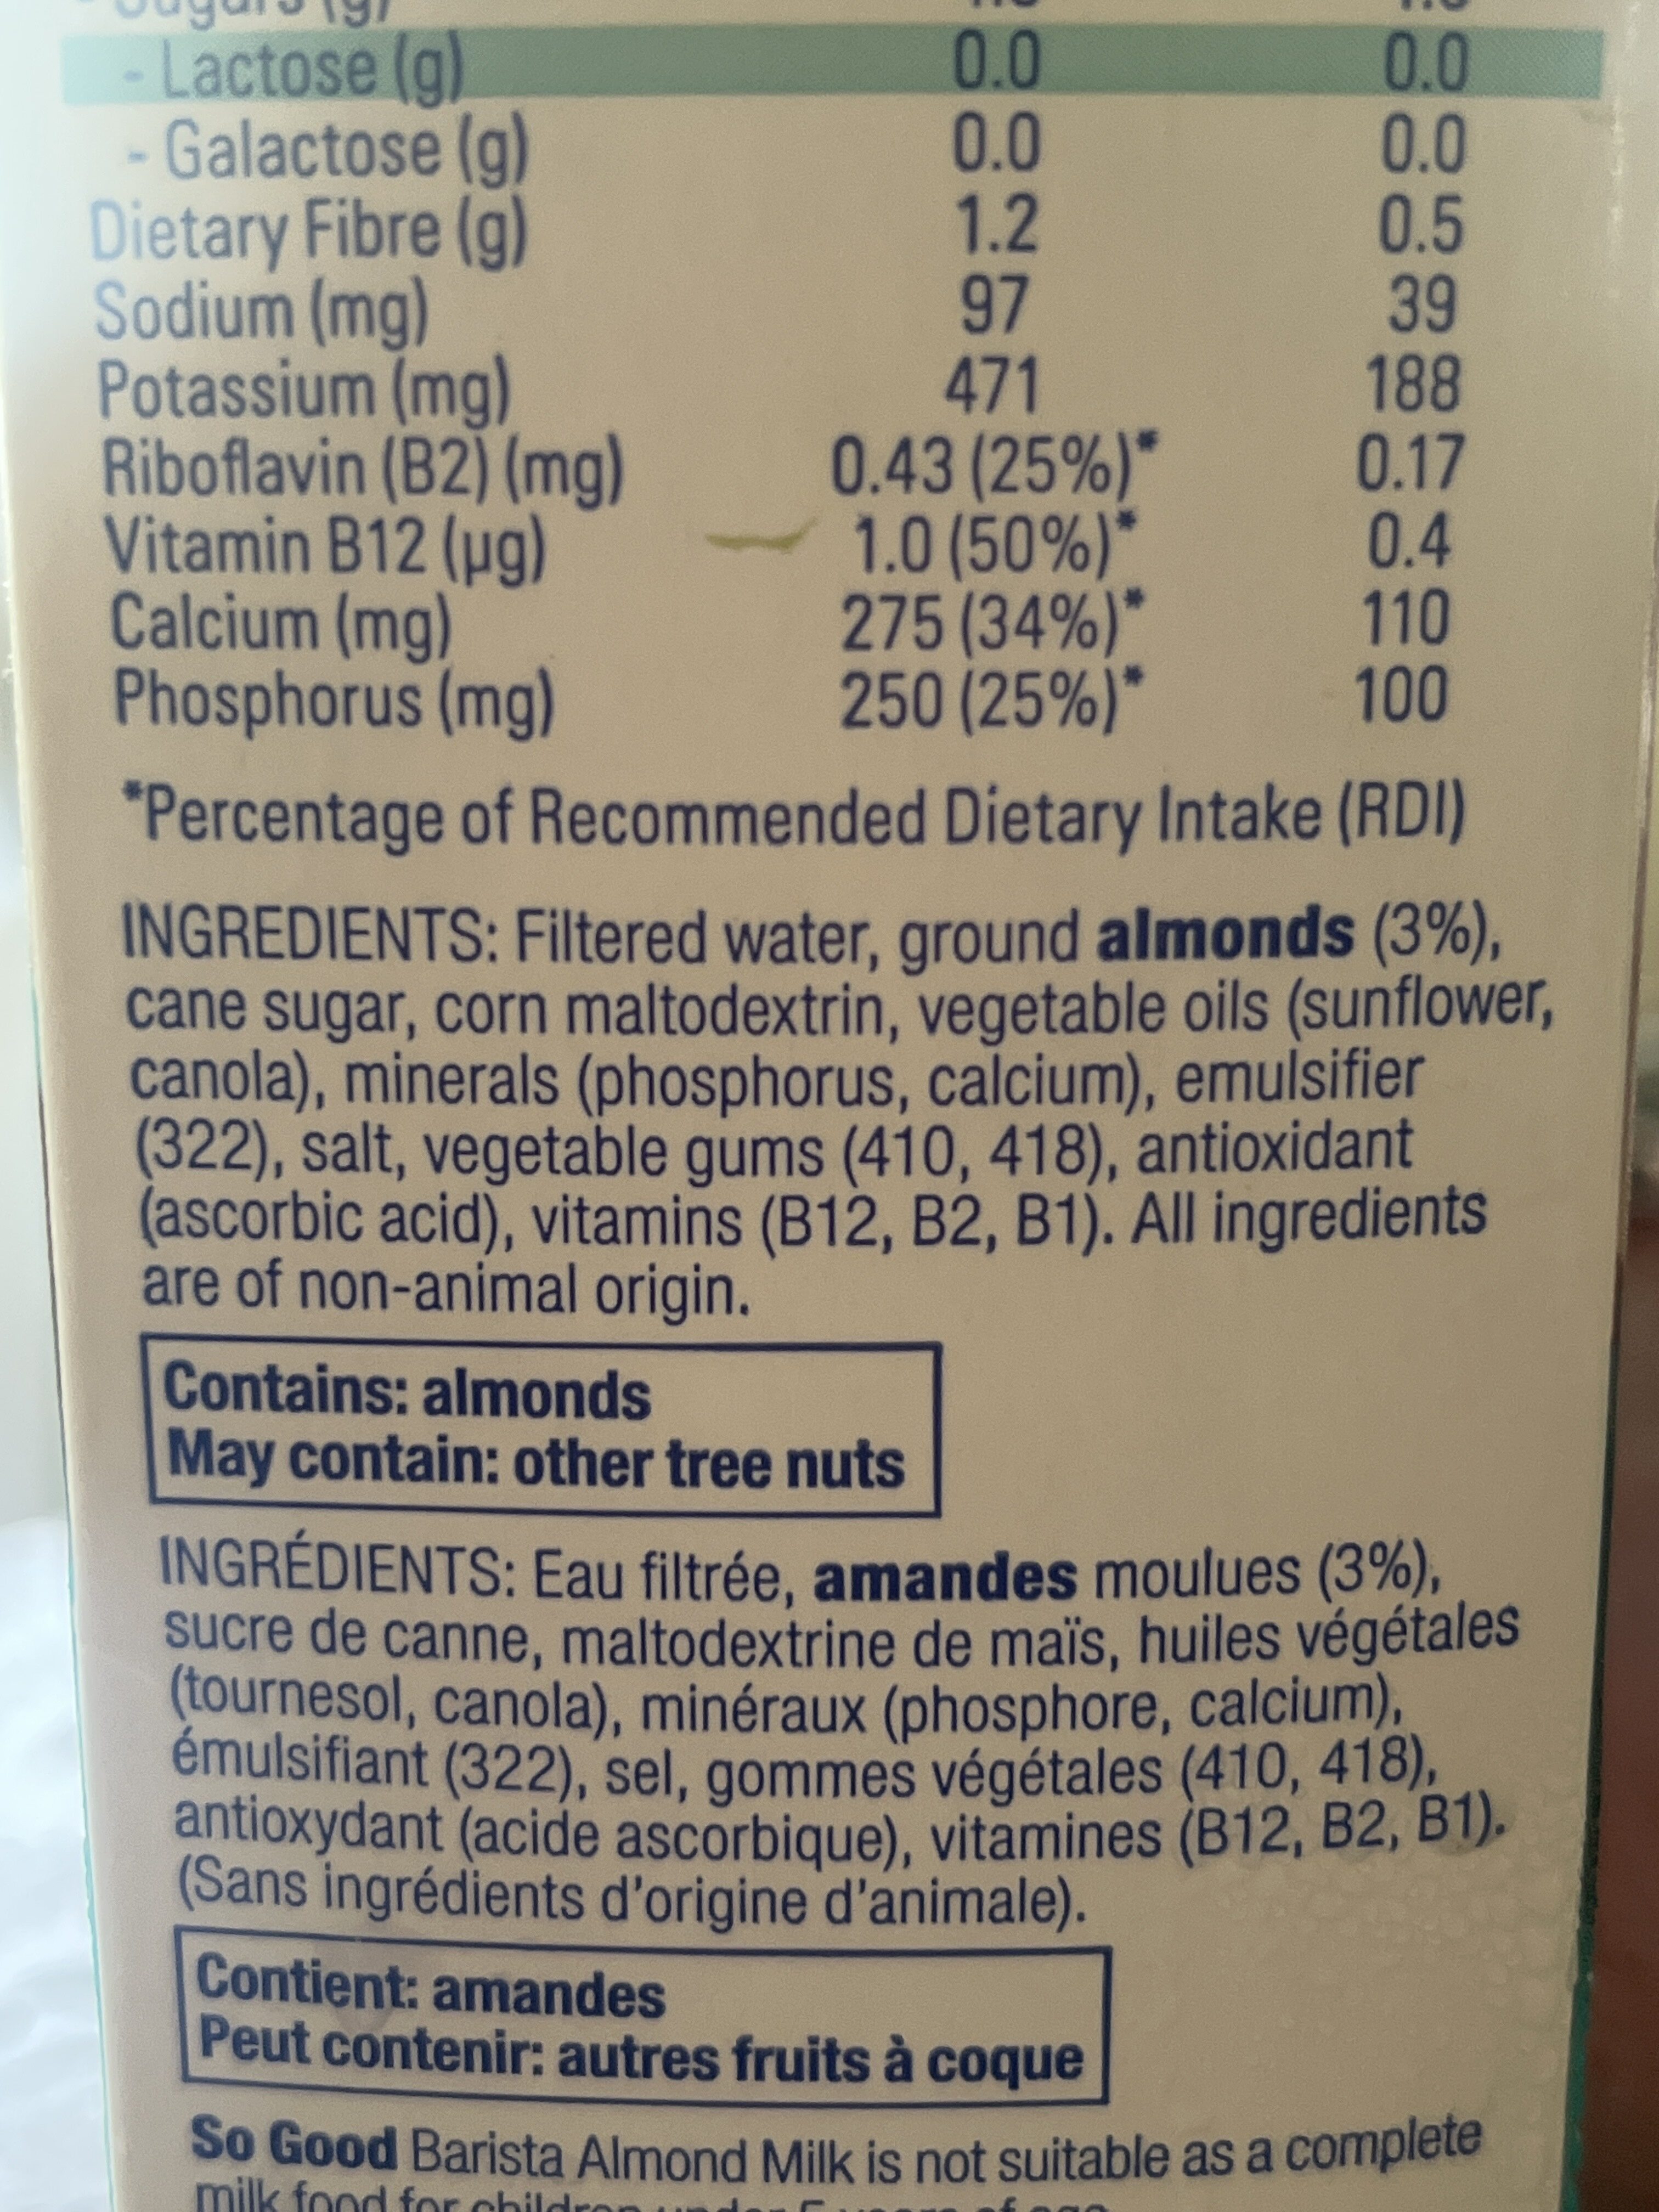 Almond milk barista edition - Ingredients